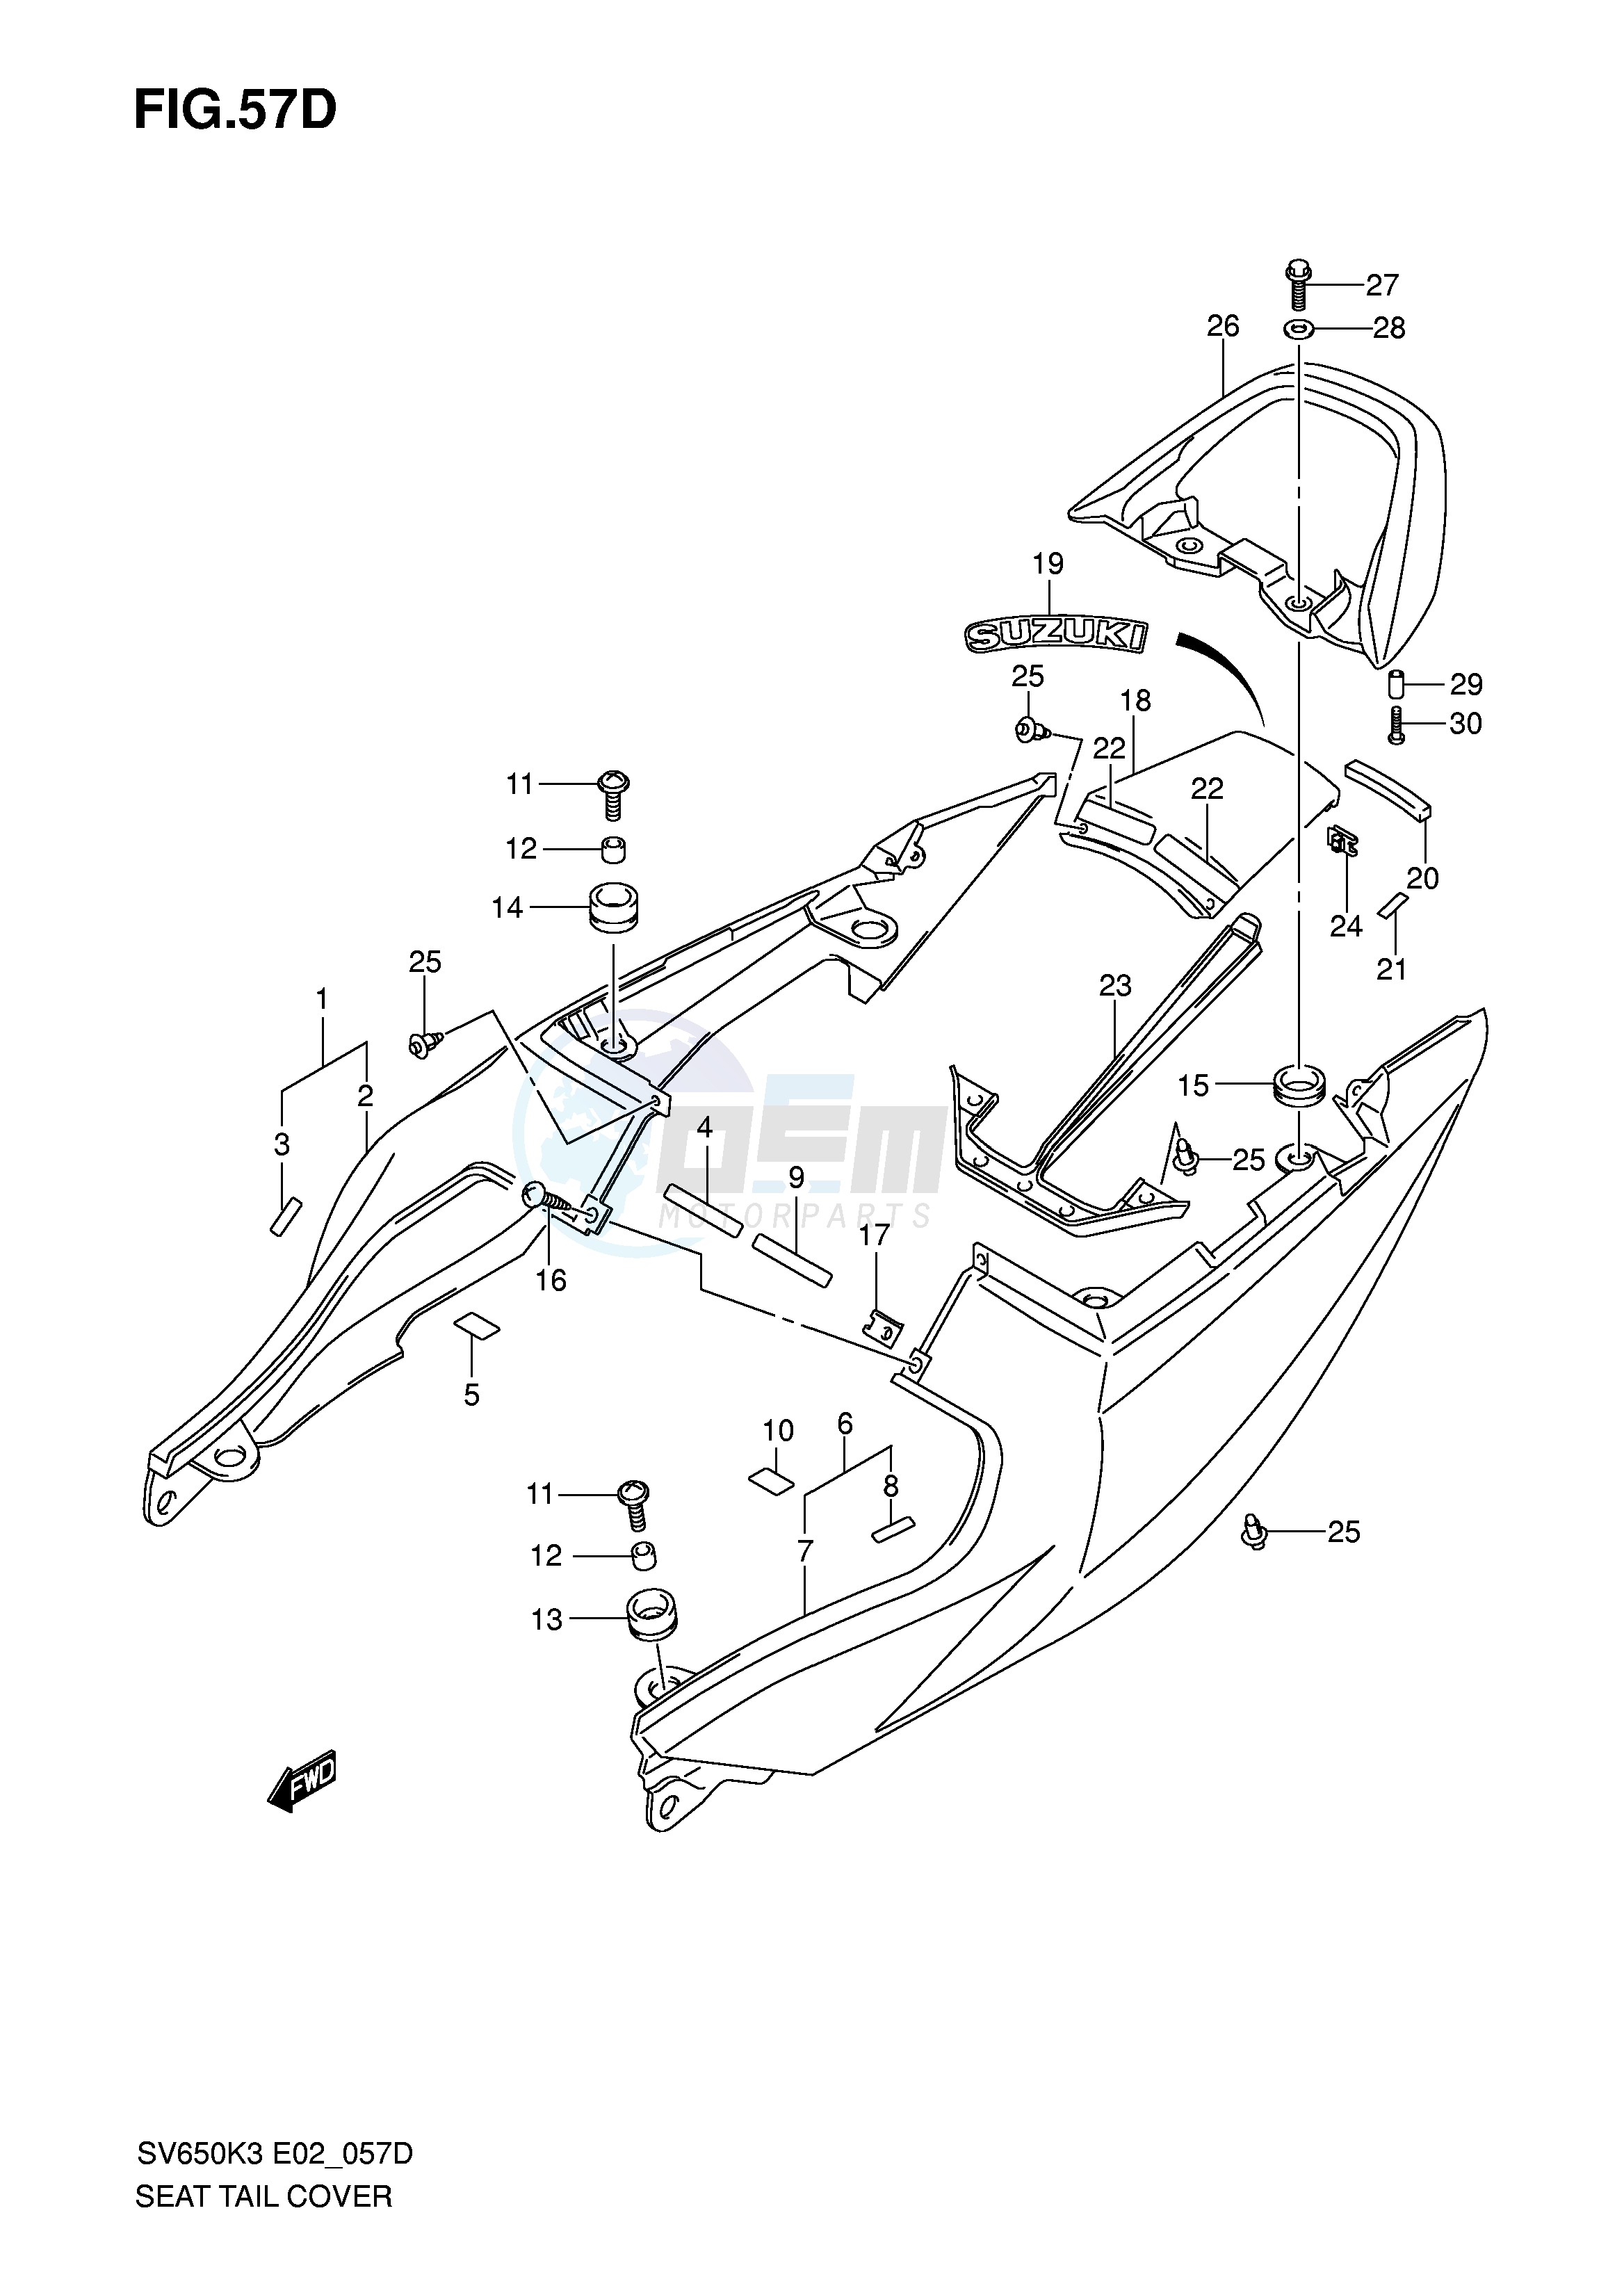 SEAT TAIL COVER (SV650SK5 SUK5) blueprint